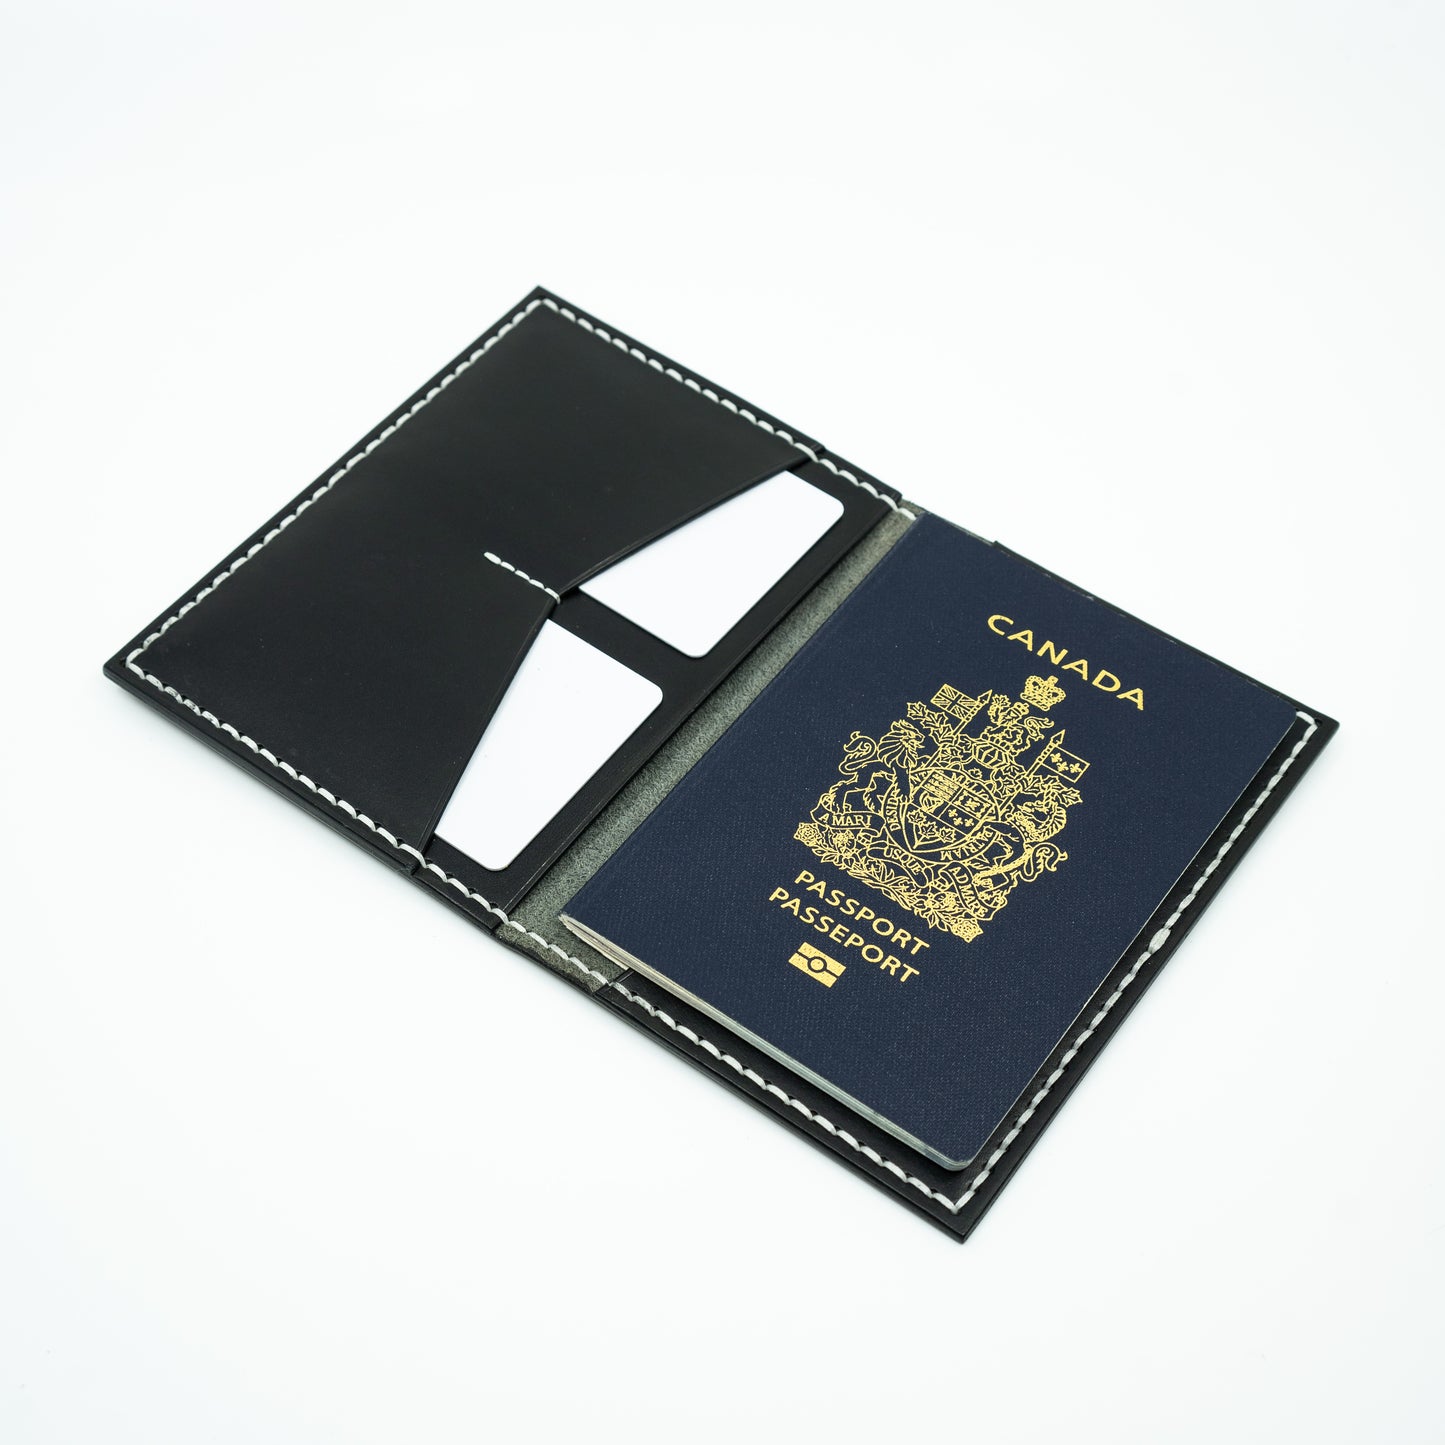 The Passport Wallet